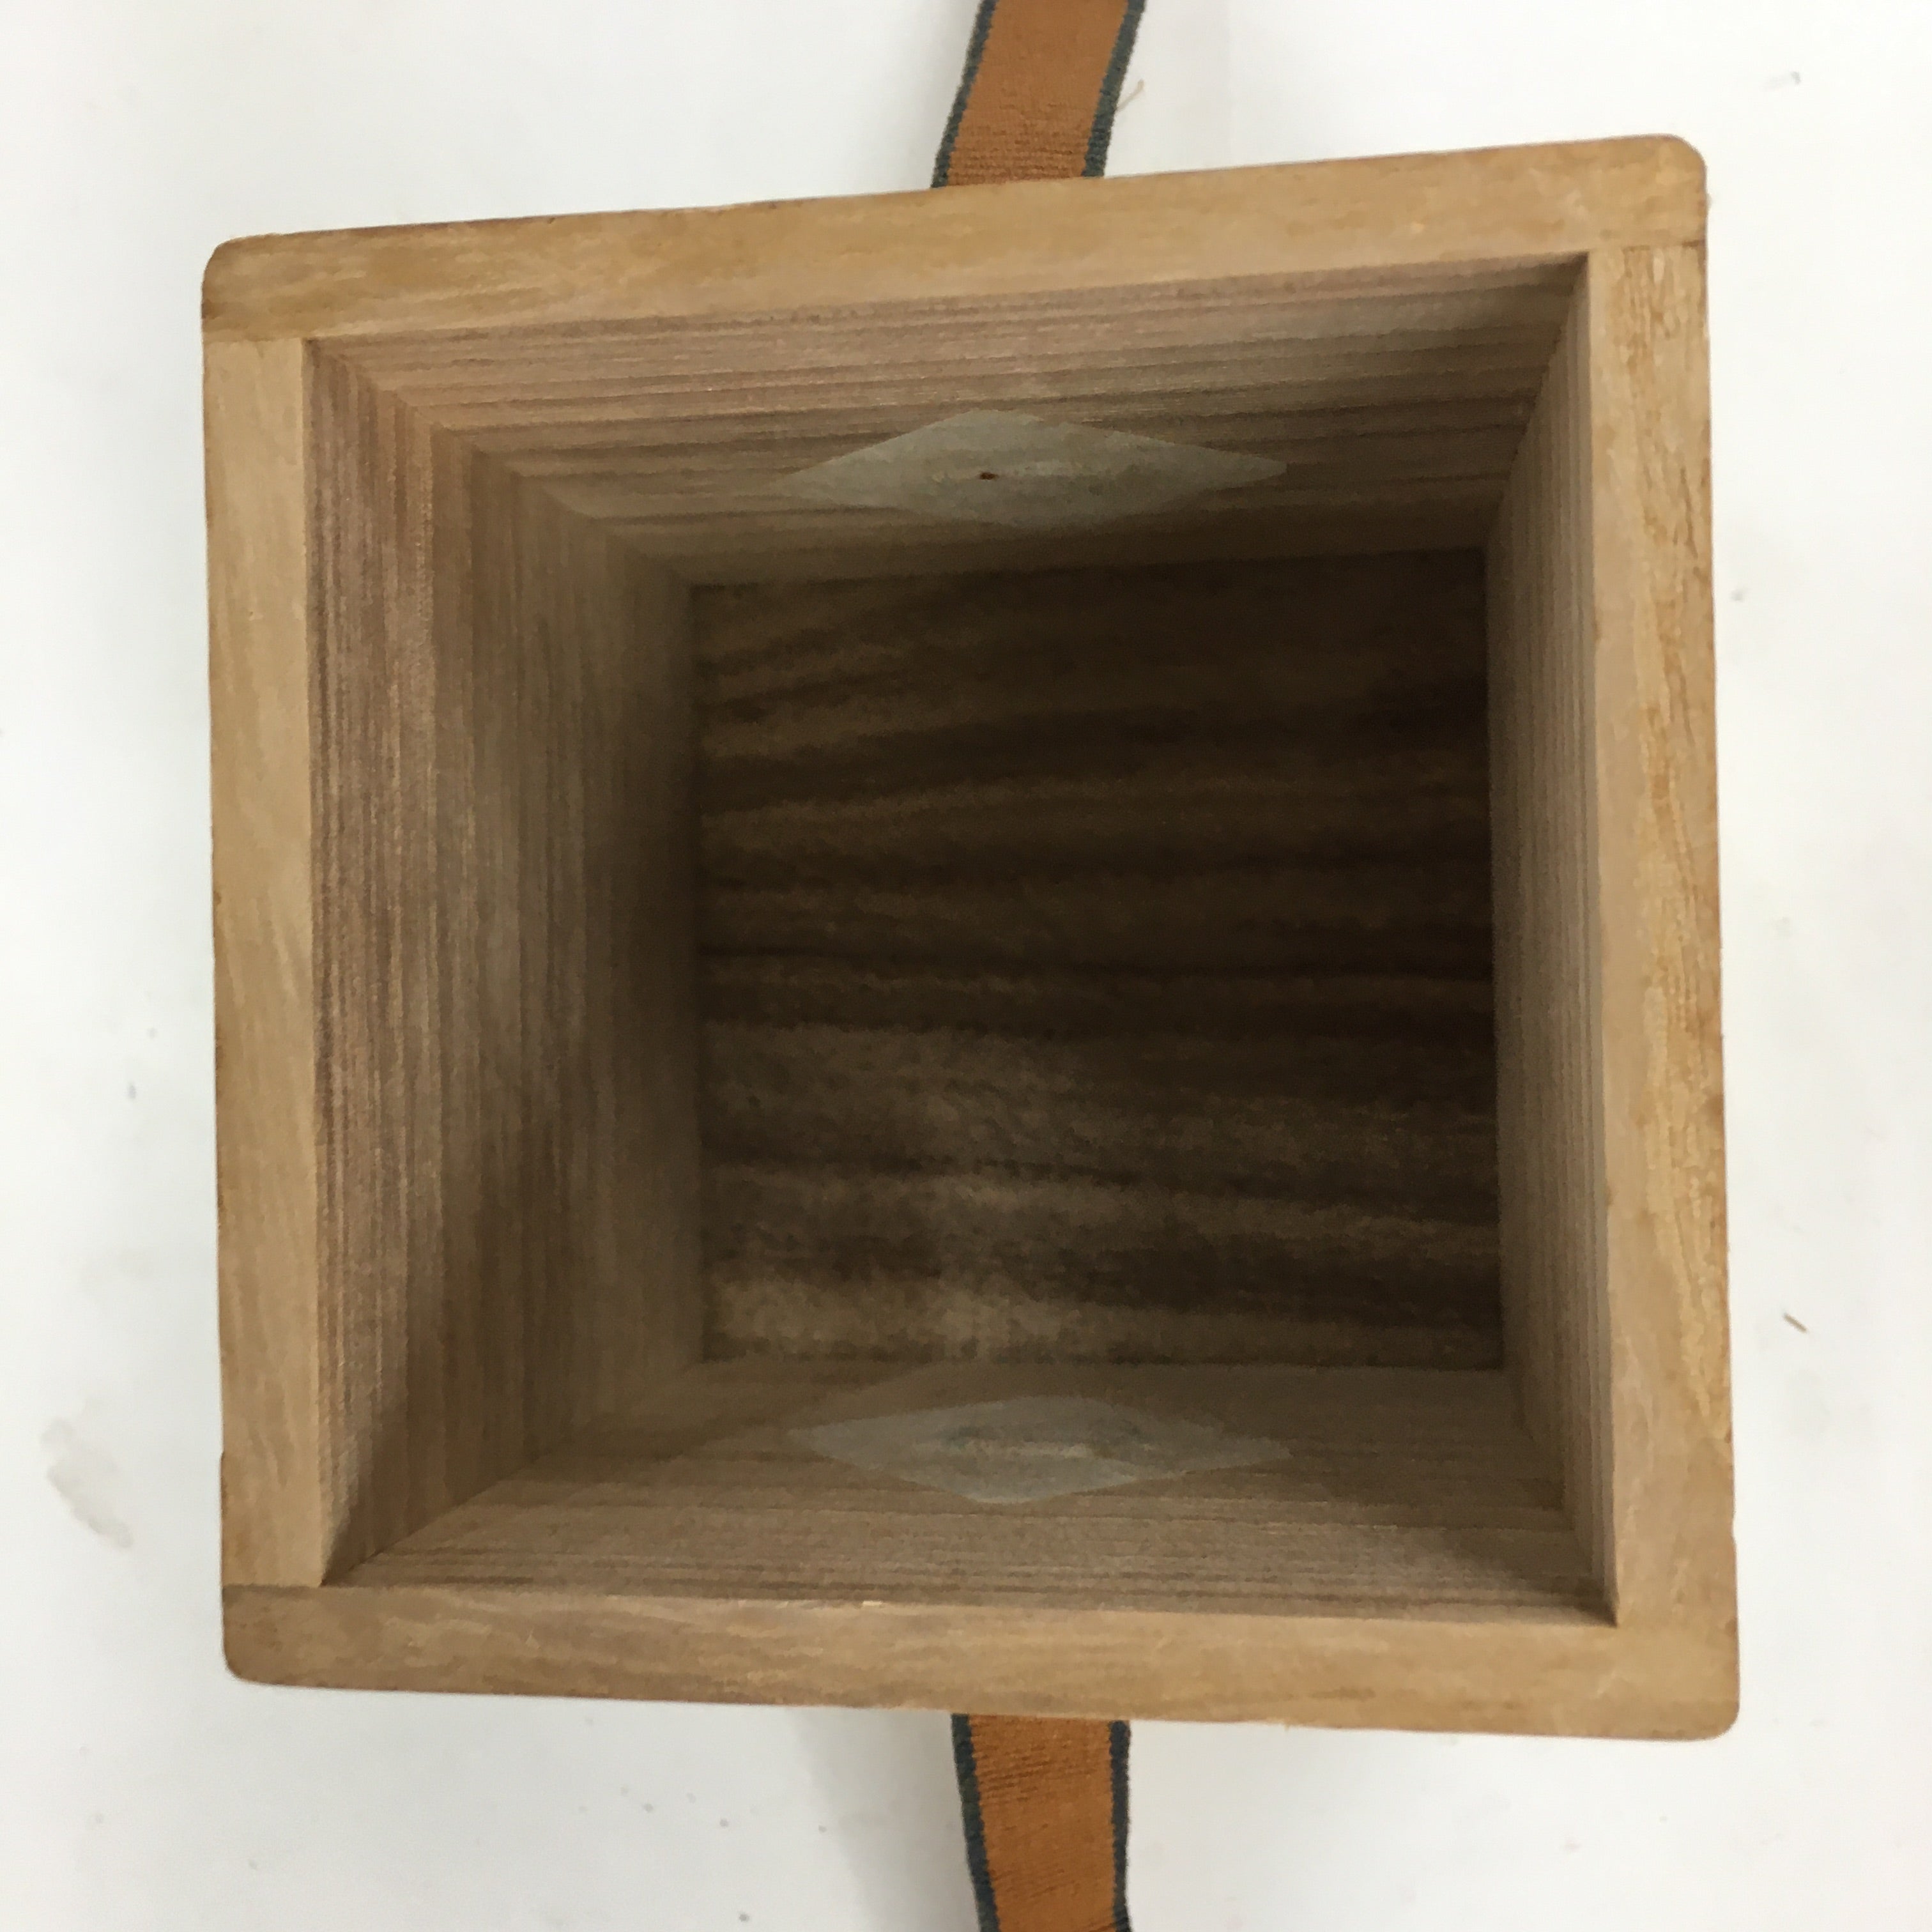 Japanese Wooden Storage Box Vtg Pottery Hako Inside 7.1x7.1x8cm WB892